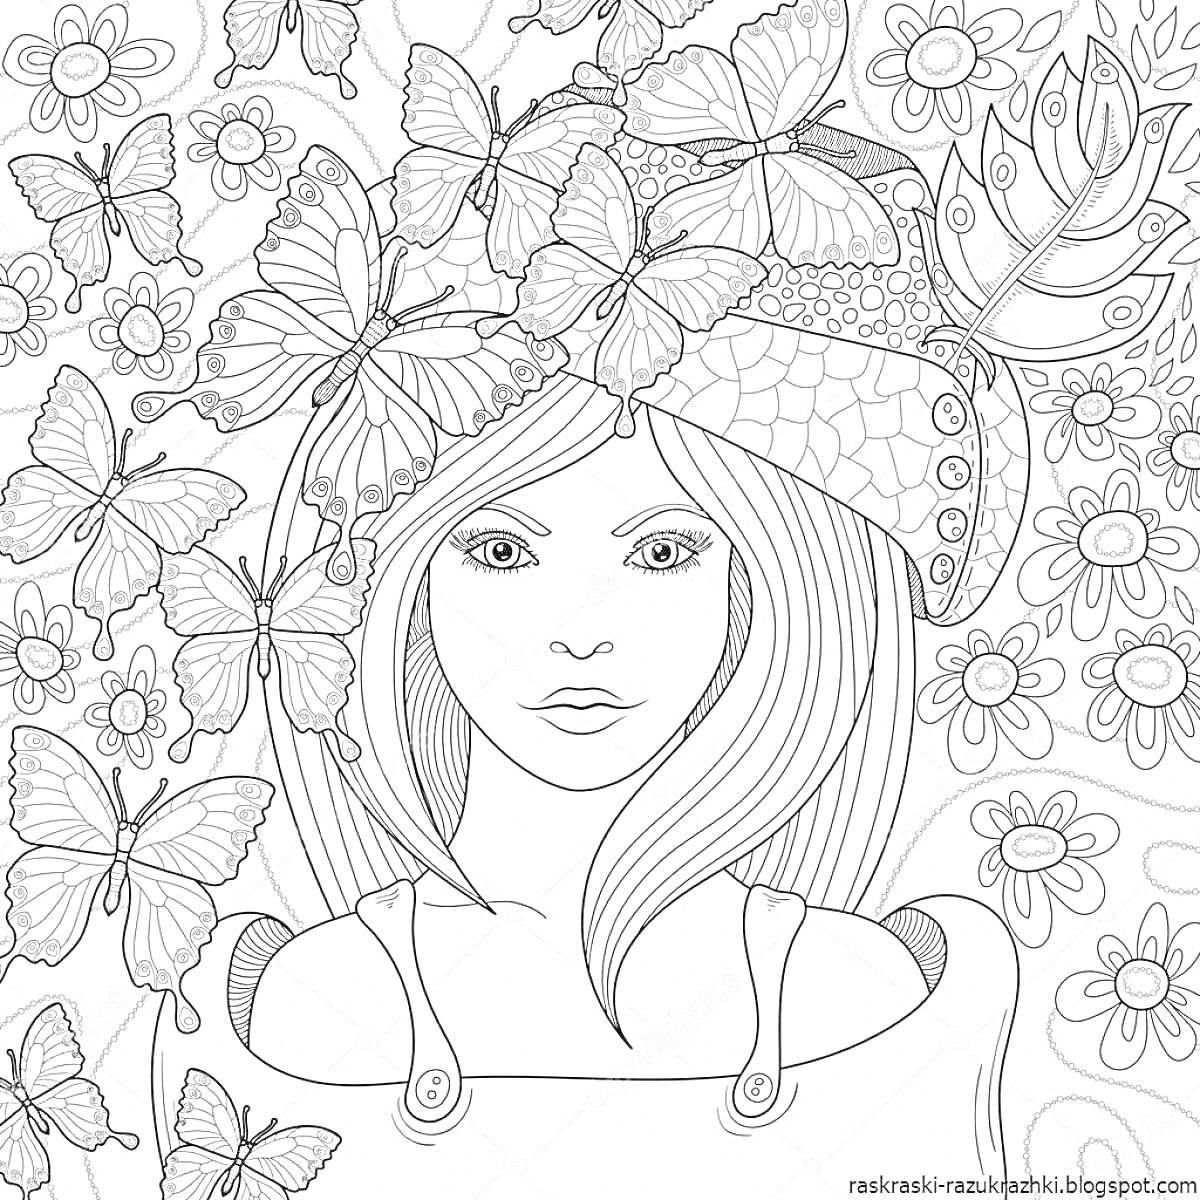 Раскраска Девушка с длинными волосами в цветочной шляпе и бабочками на фоне цветочного узора